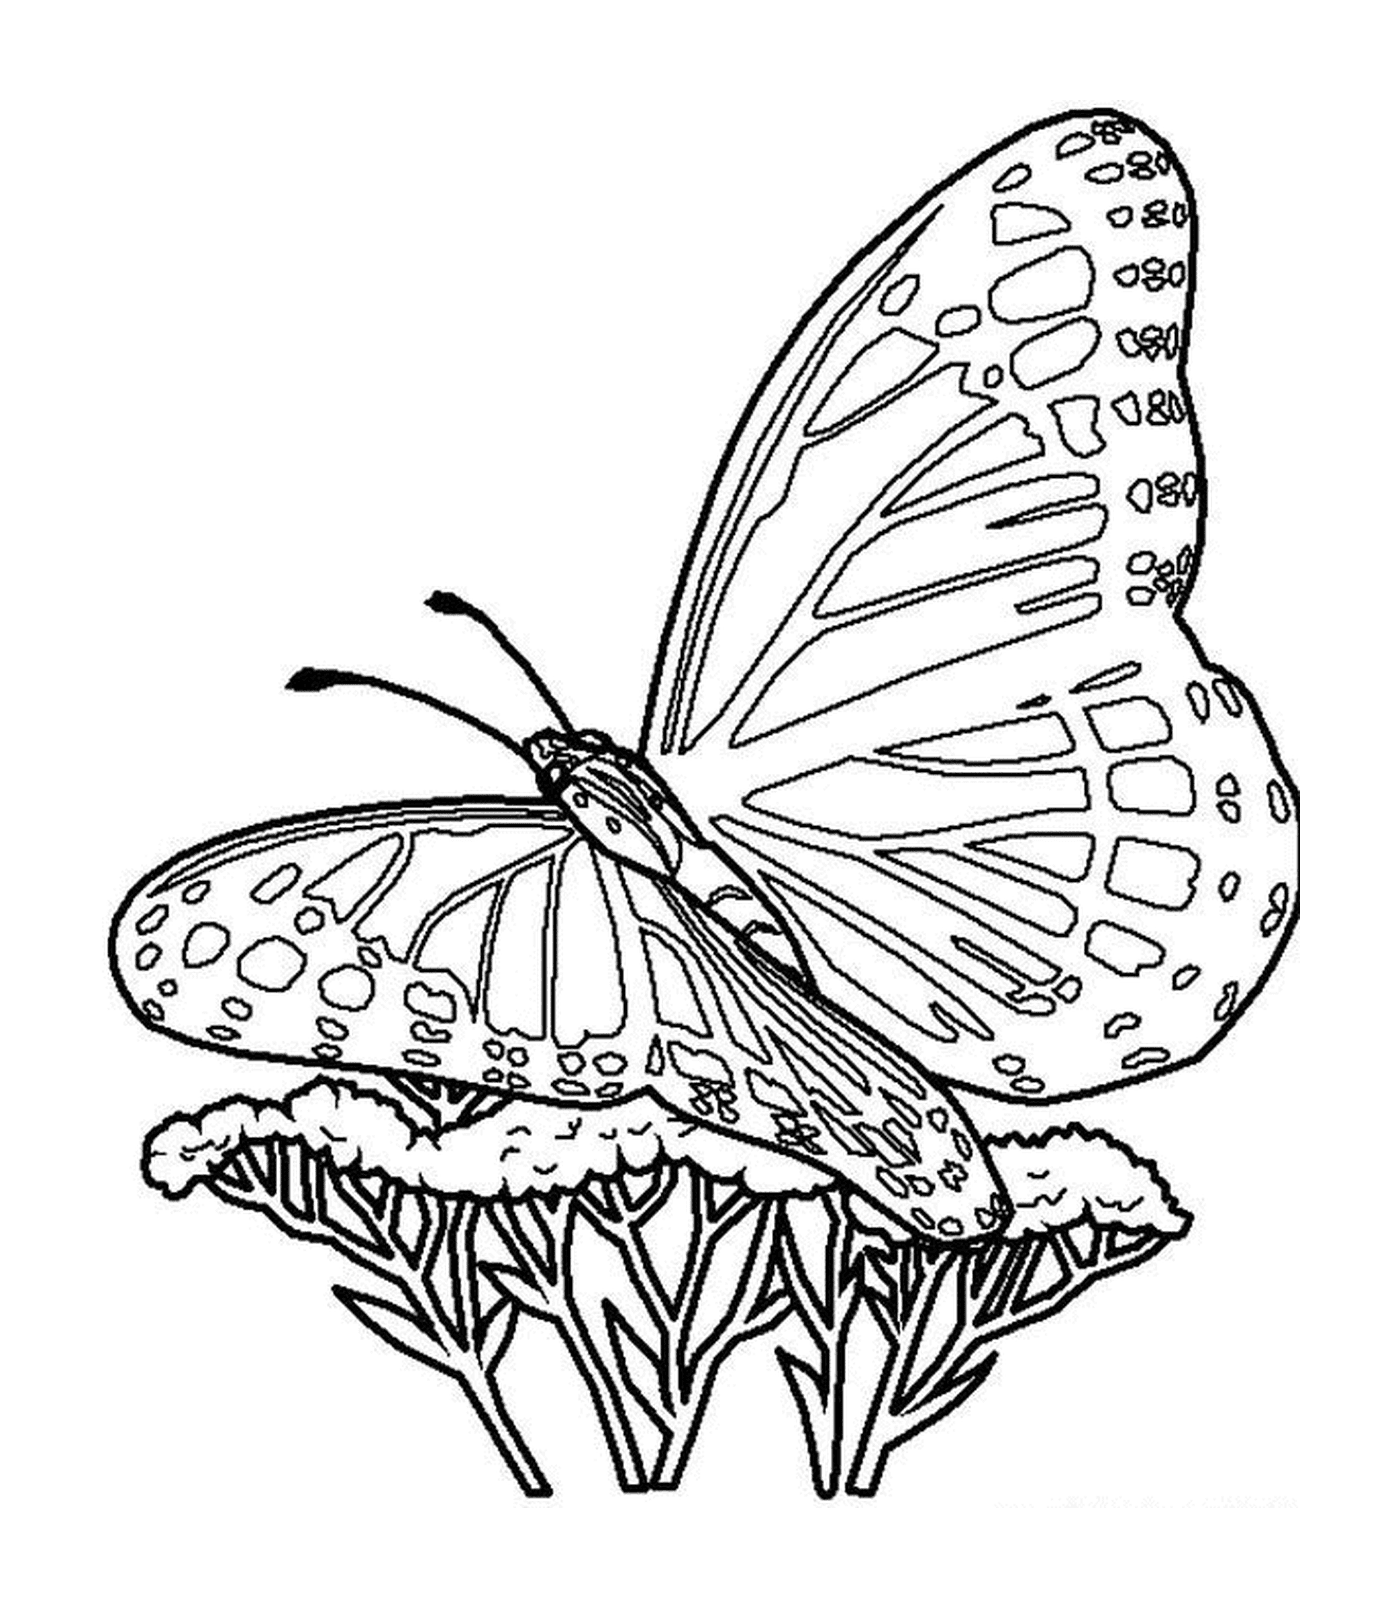  Uma borboleta em uma flor 